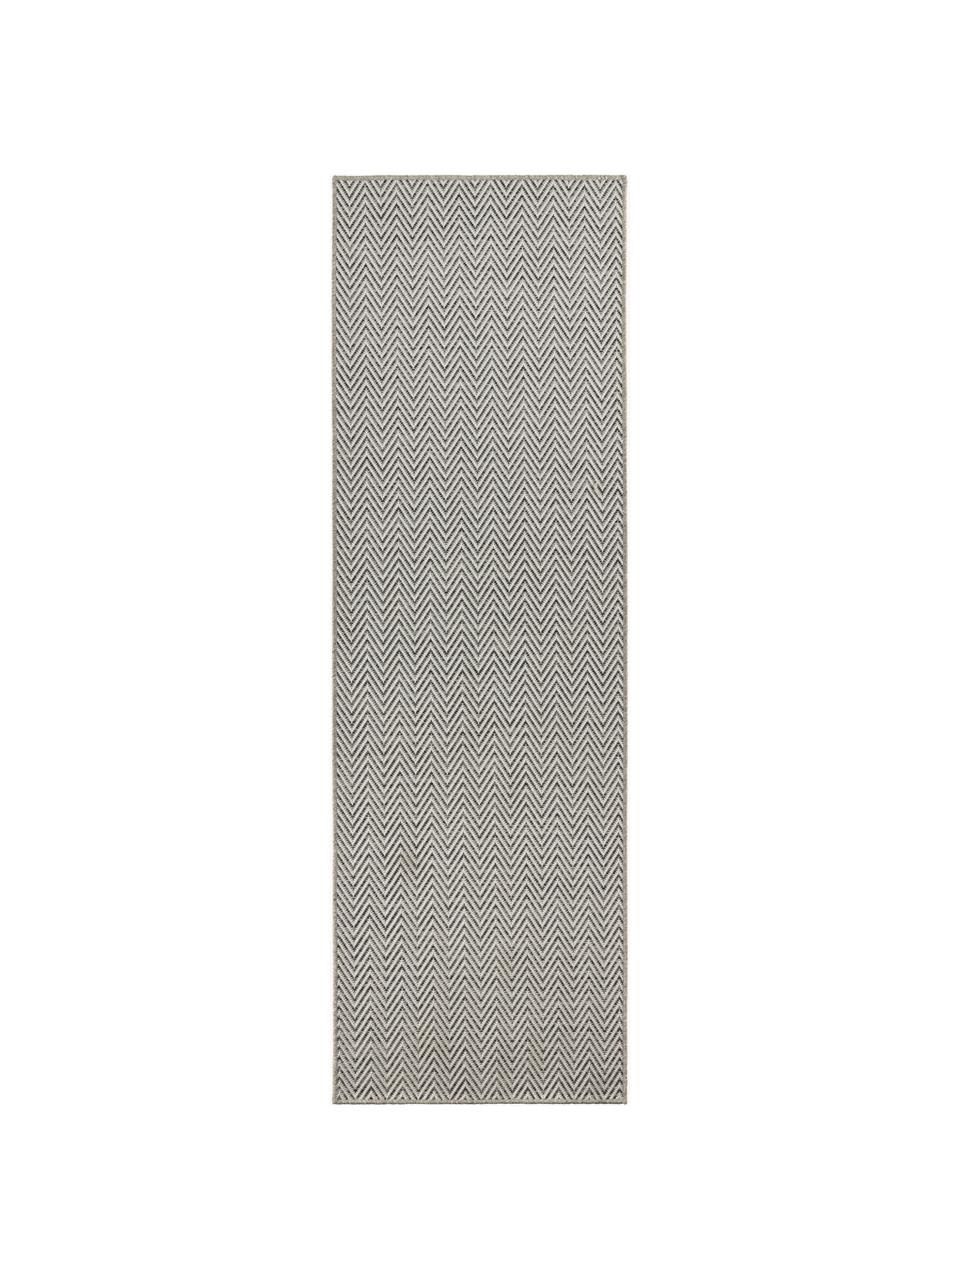 Interiérový/exteriérový běhoun s jemným klikatým vzorem Nature, 100 % polypropylen, Šedá, bílá, Š 80 cm, D 250 cm